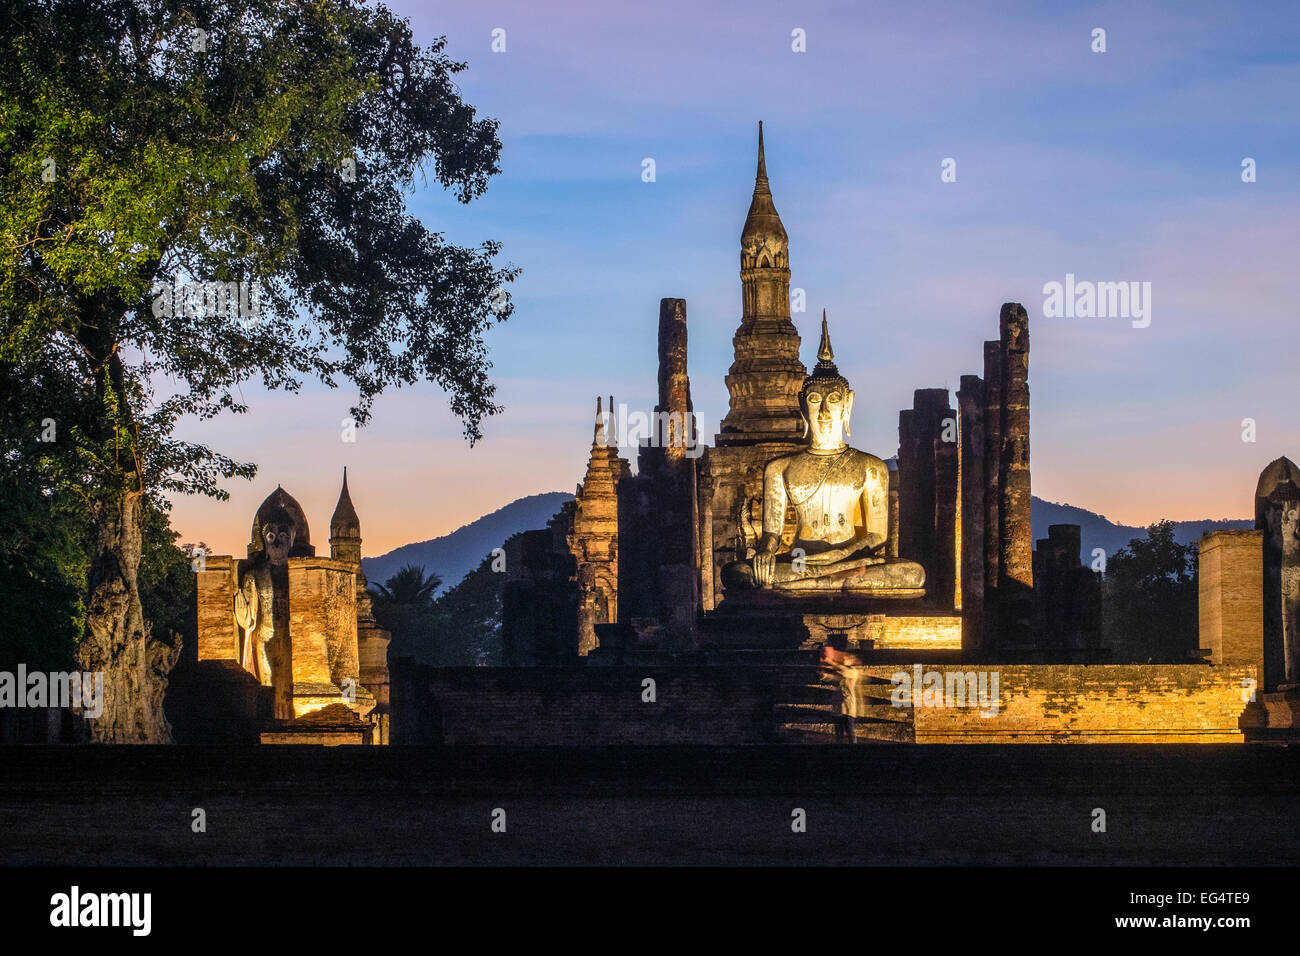 L'Asie. La Thaïlande, l'ancienne capitale du Siam. Parc archéologique de Sukhothai, classé au Patrimoine Mondial de l'UNESCO. Wat Mahathat au coucher du soleil. Banque D'Images